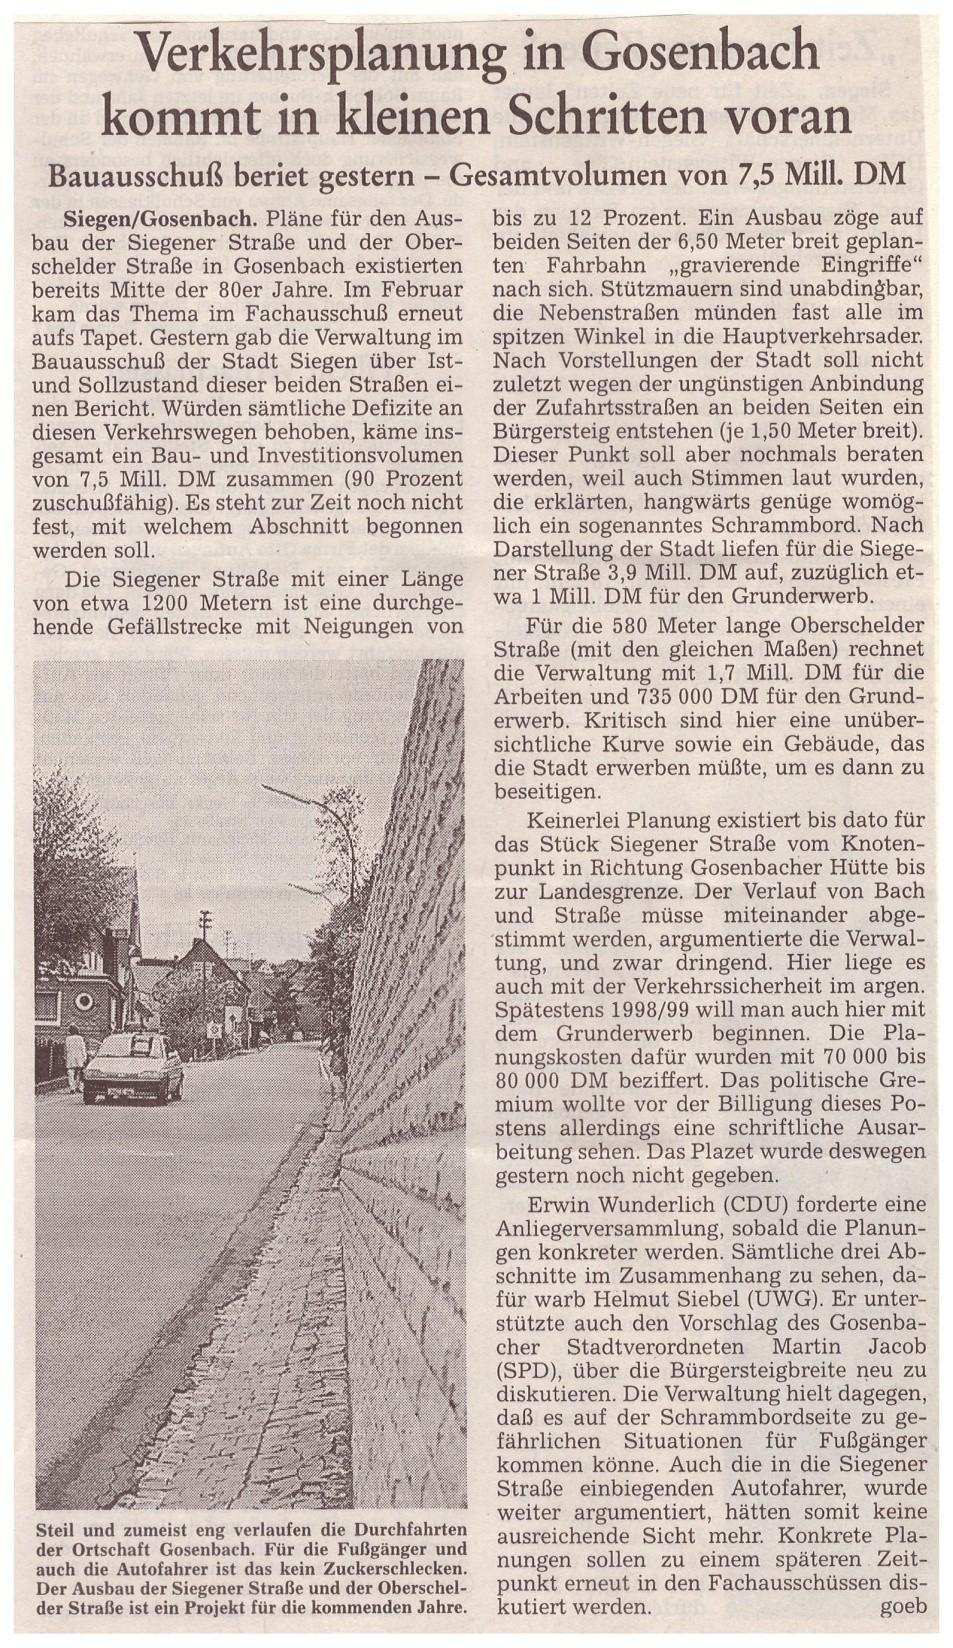 1997 Ein Thema der Vergangenheit begleitet uns in der Gegenwart Seit nunmehr fast 20 Jahren bemüht sich der SPD- Ortsverein eine auch für die Anwohner verträgliche Lösung bei der Sanierung der